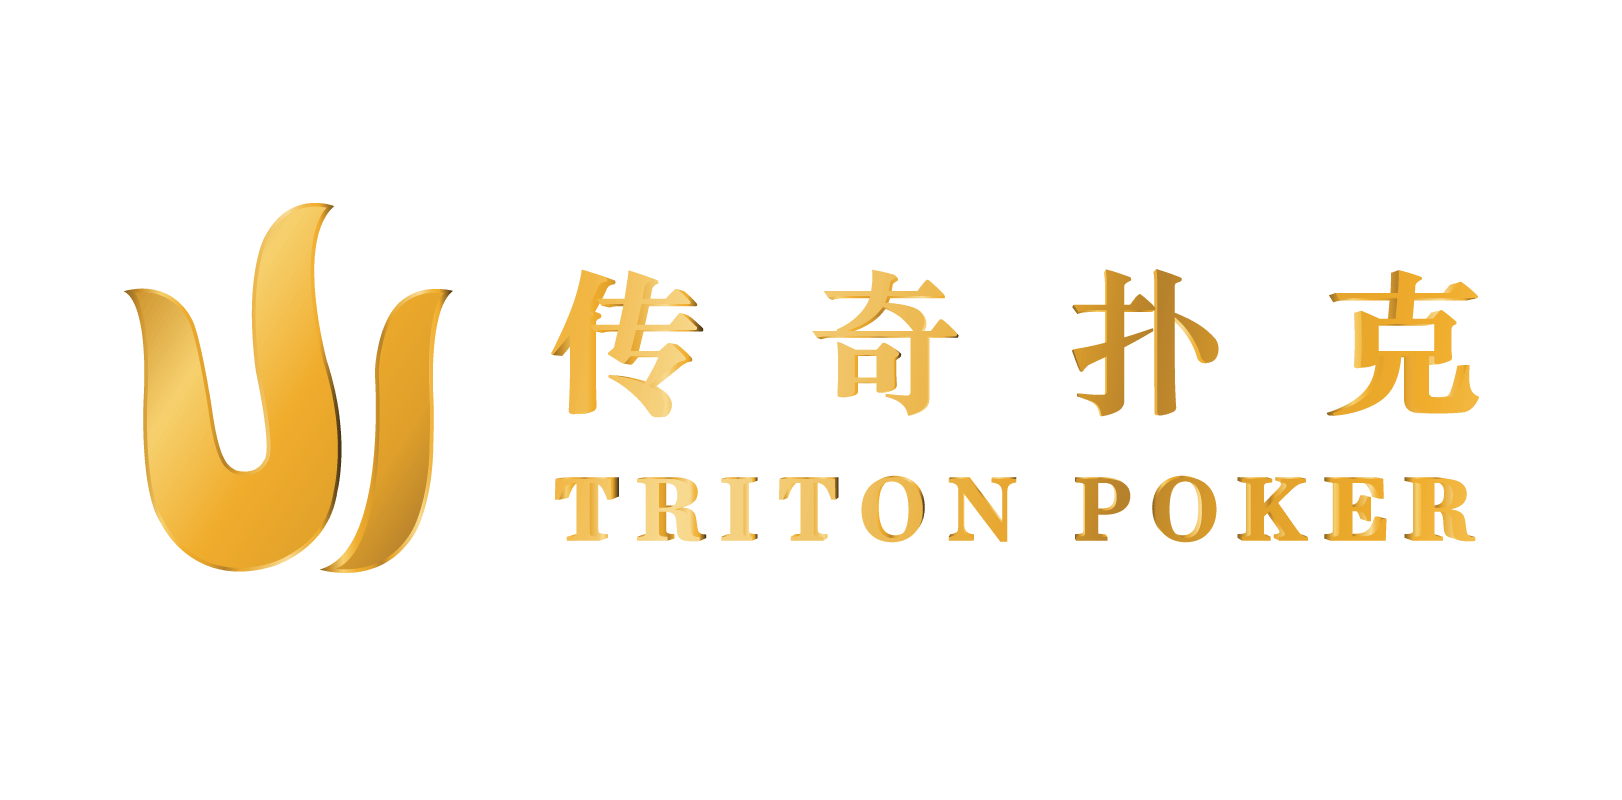 Tritton Logo - Triton Series: Live Stream Poker Events